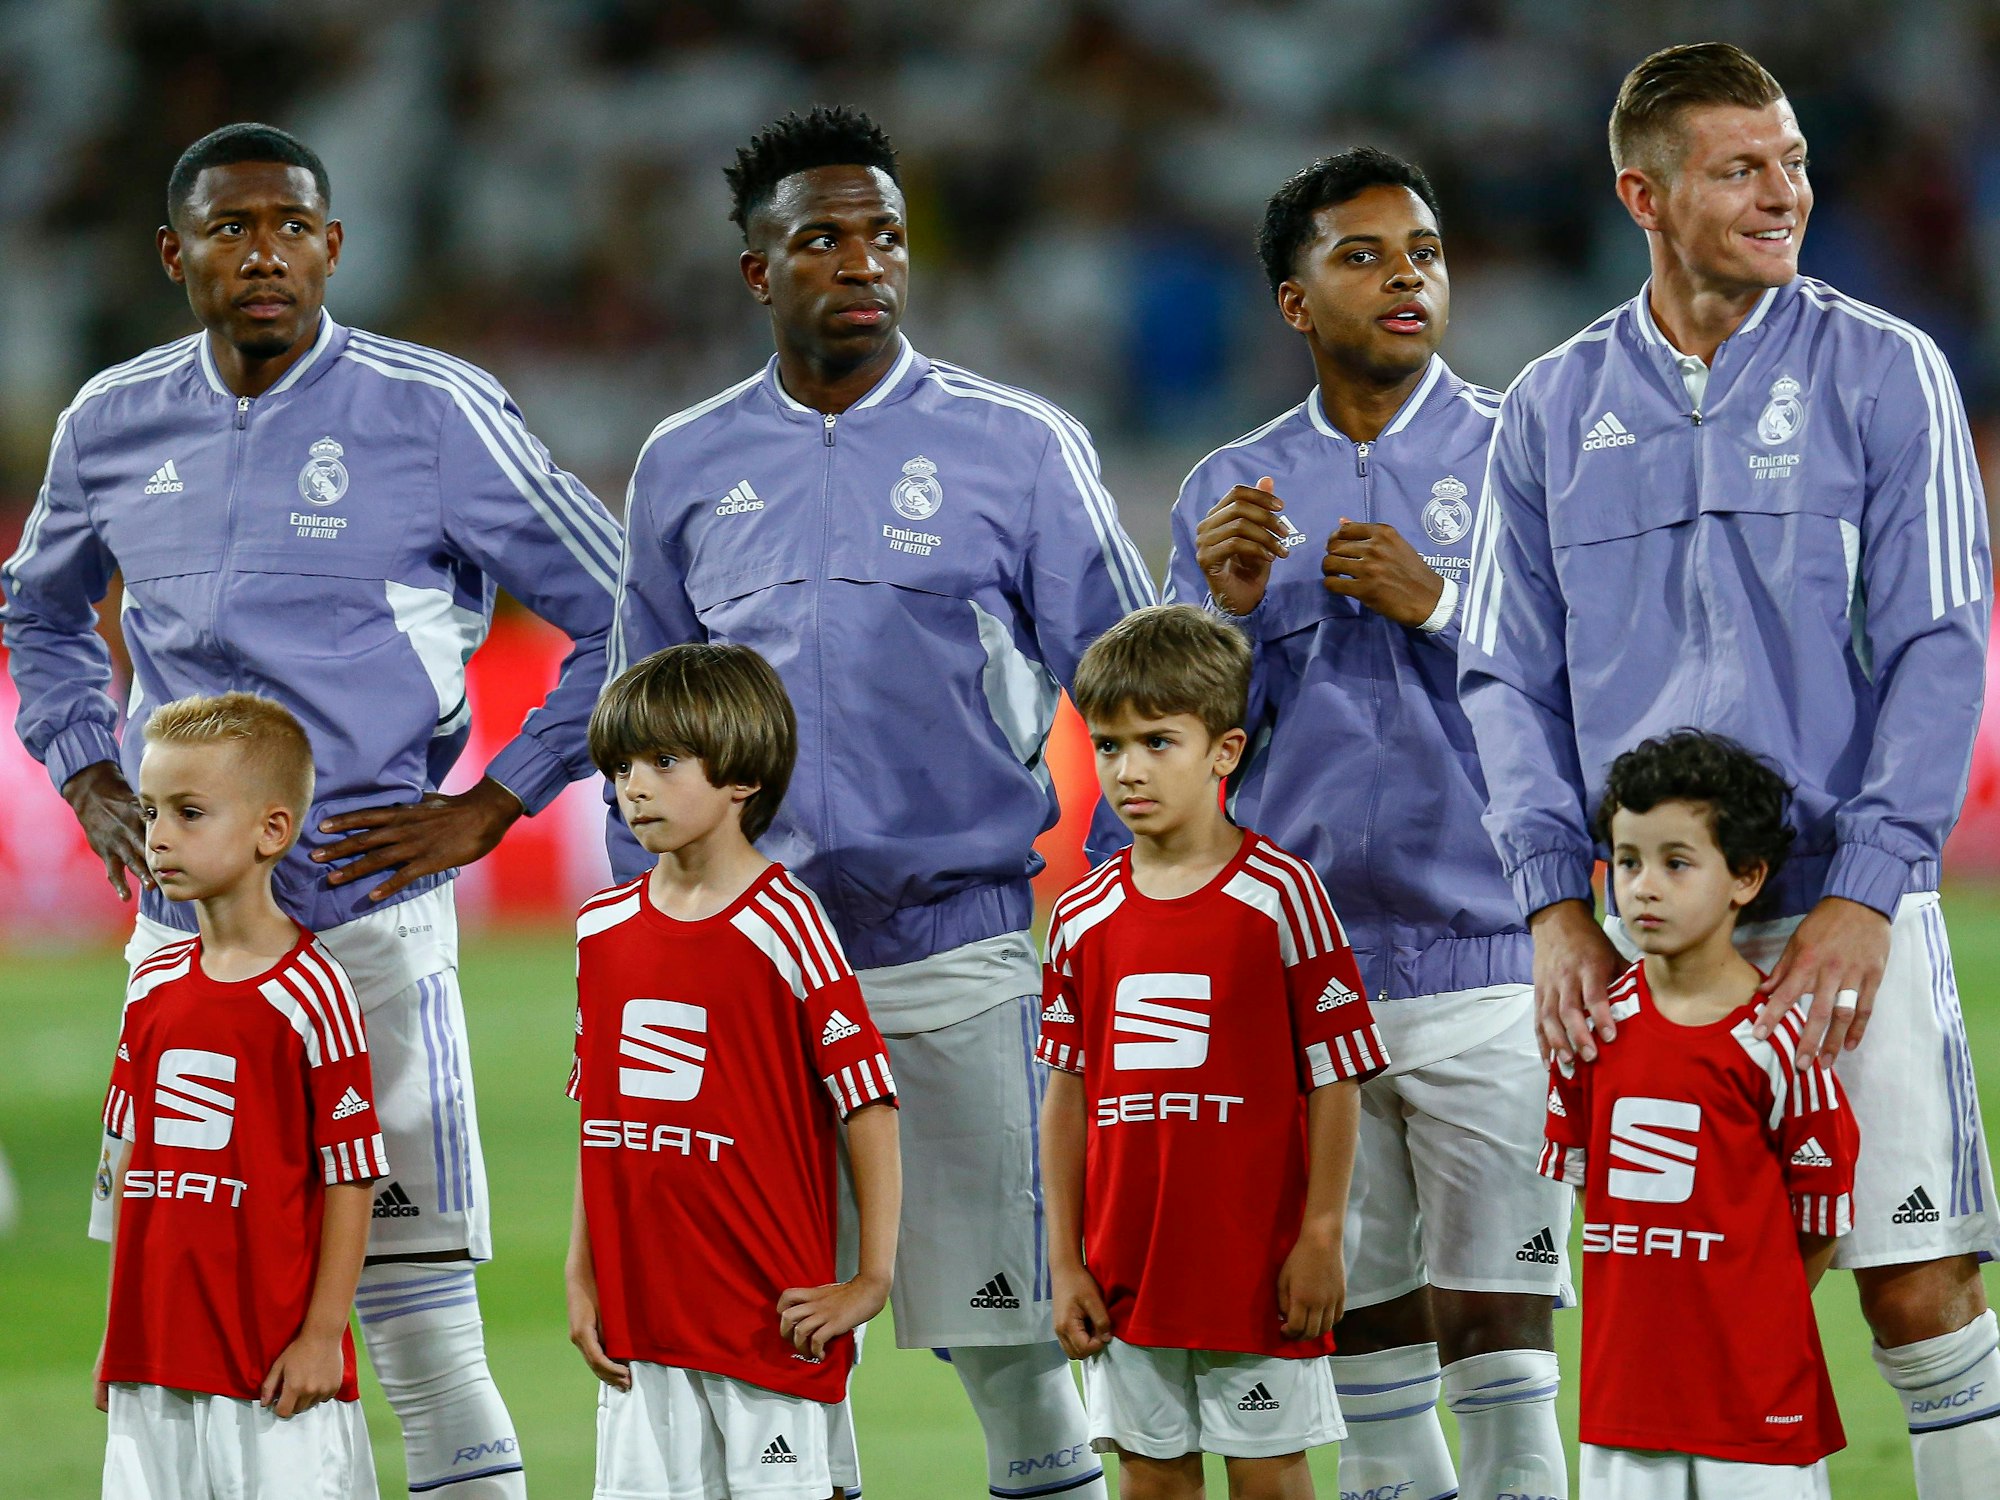 Die Real-Madrid-Spieler David Alaba, Vinicius, Rodrygo und Toni Kroos stehen hinter den Einlaufkindern.